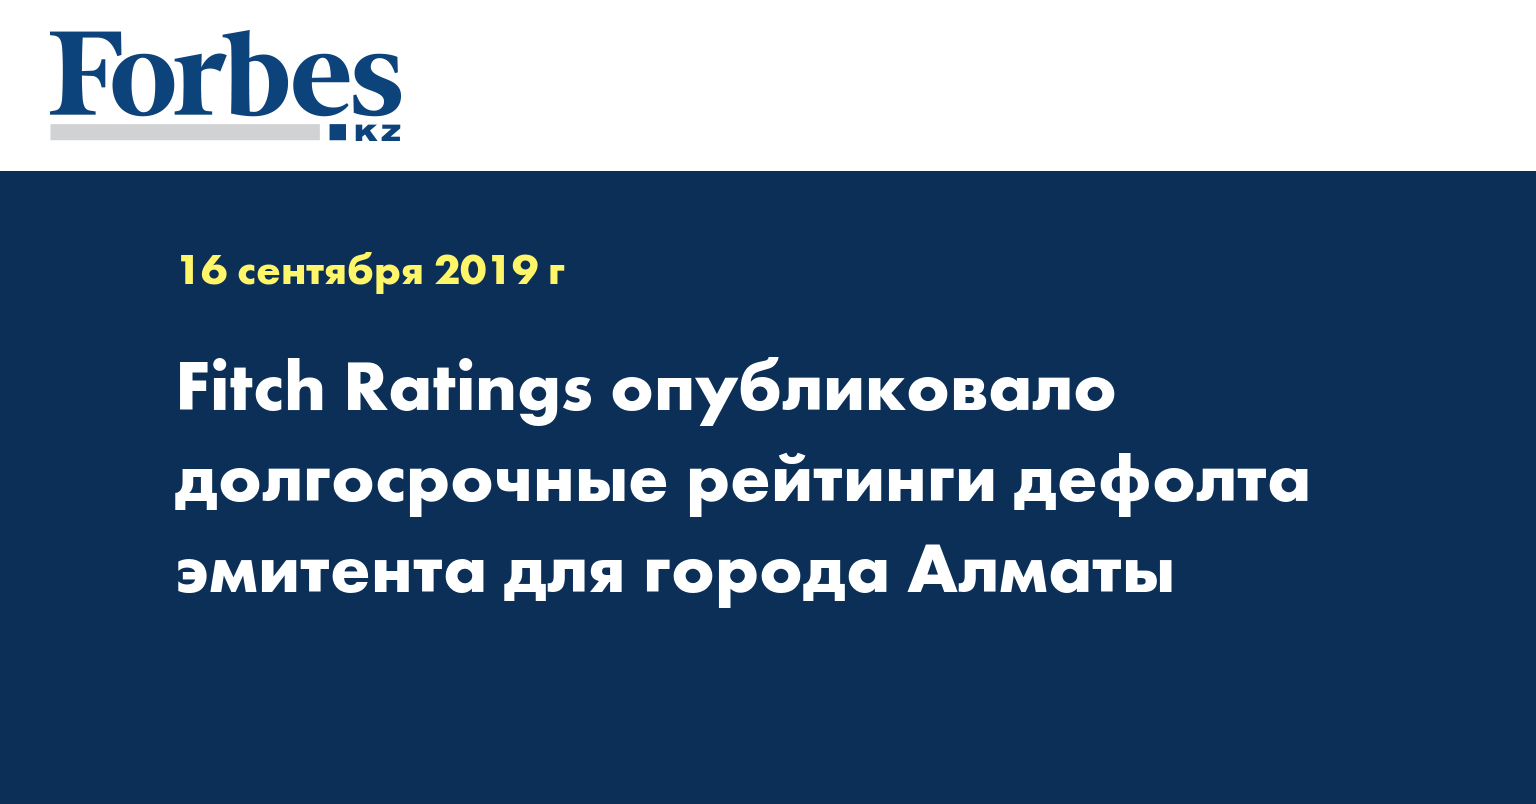 Fitch Ratings опубликовало долгосрочные рейтинги дефолта эмитента для города Алматы